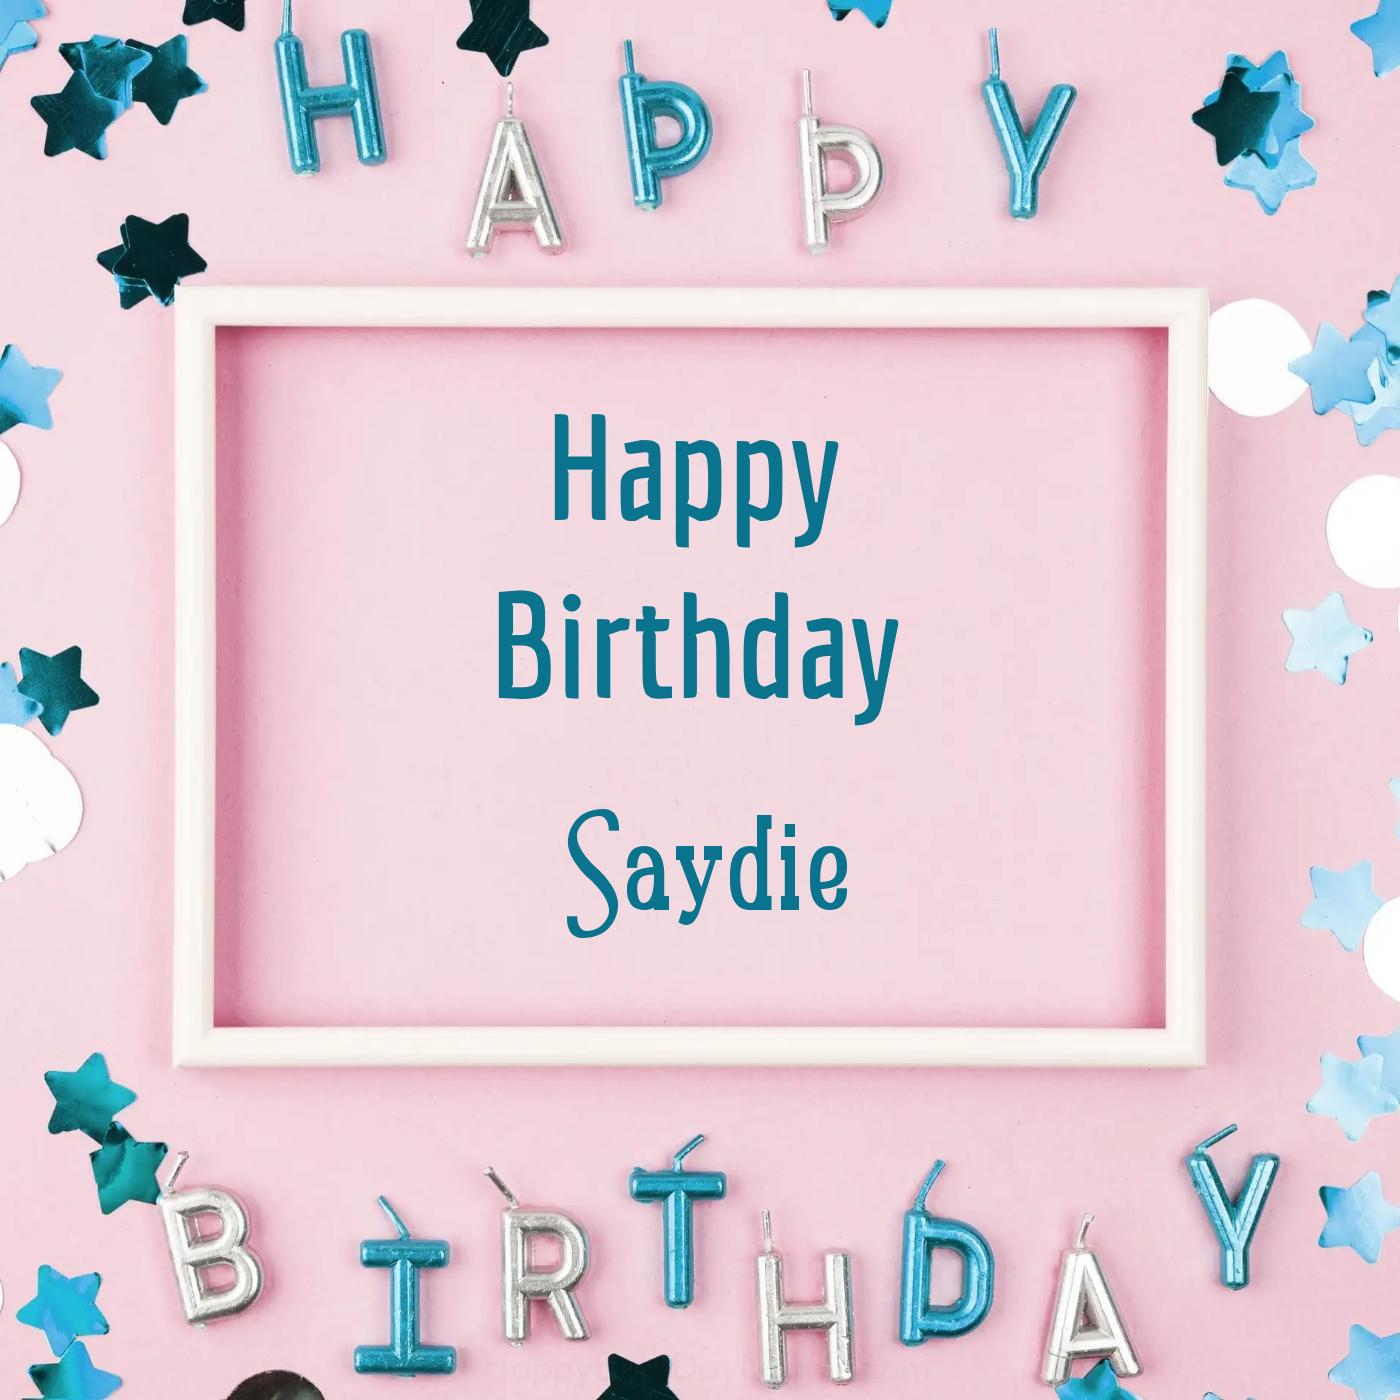 Happy Birthday Saydie Pink Frame Card